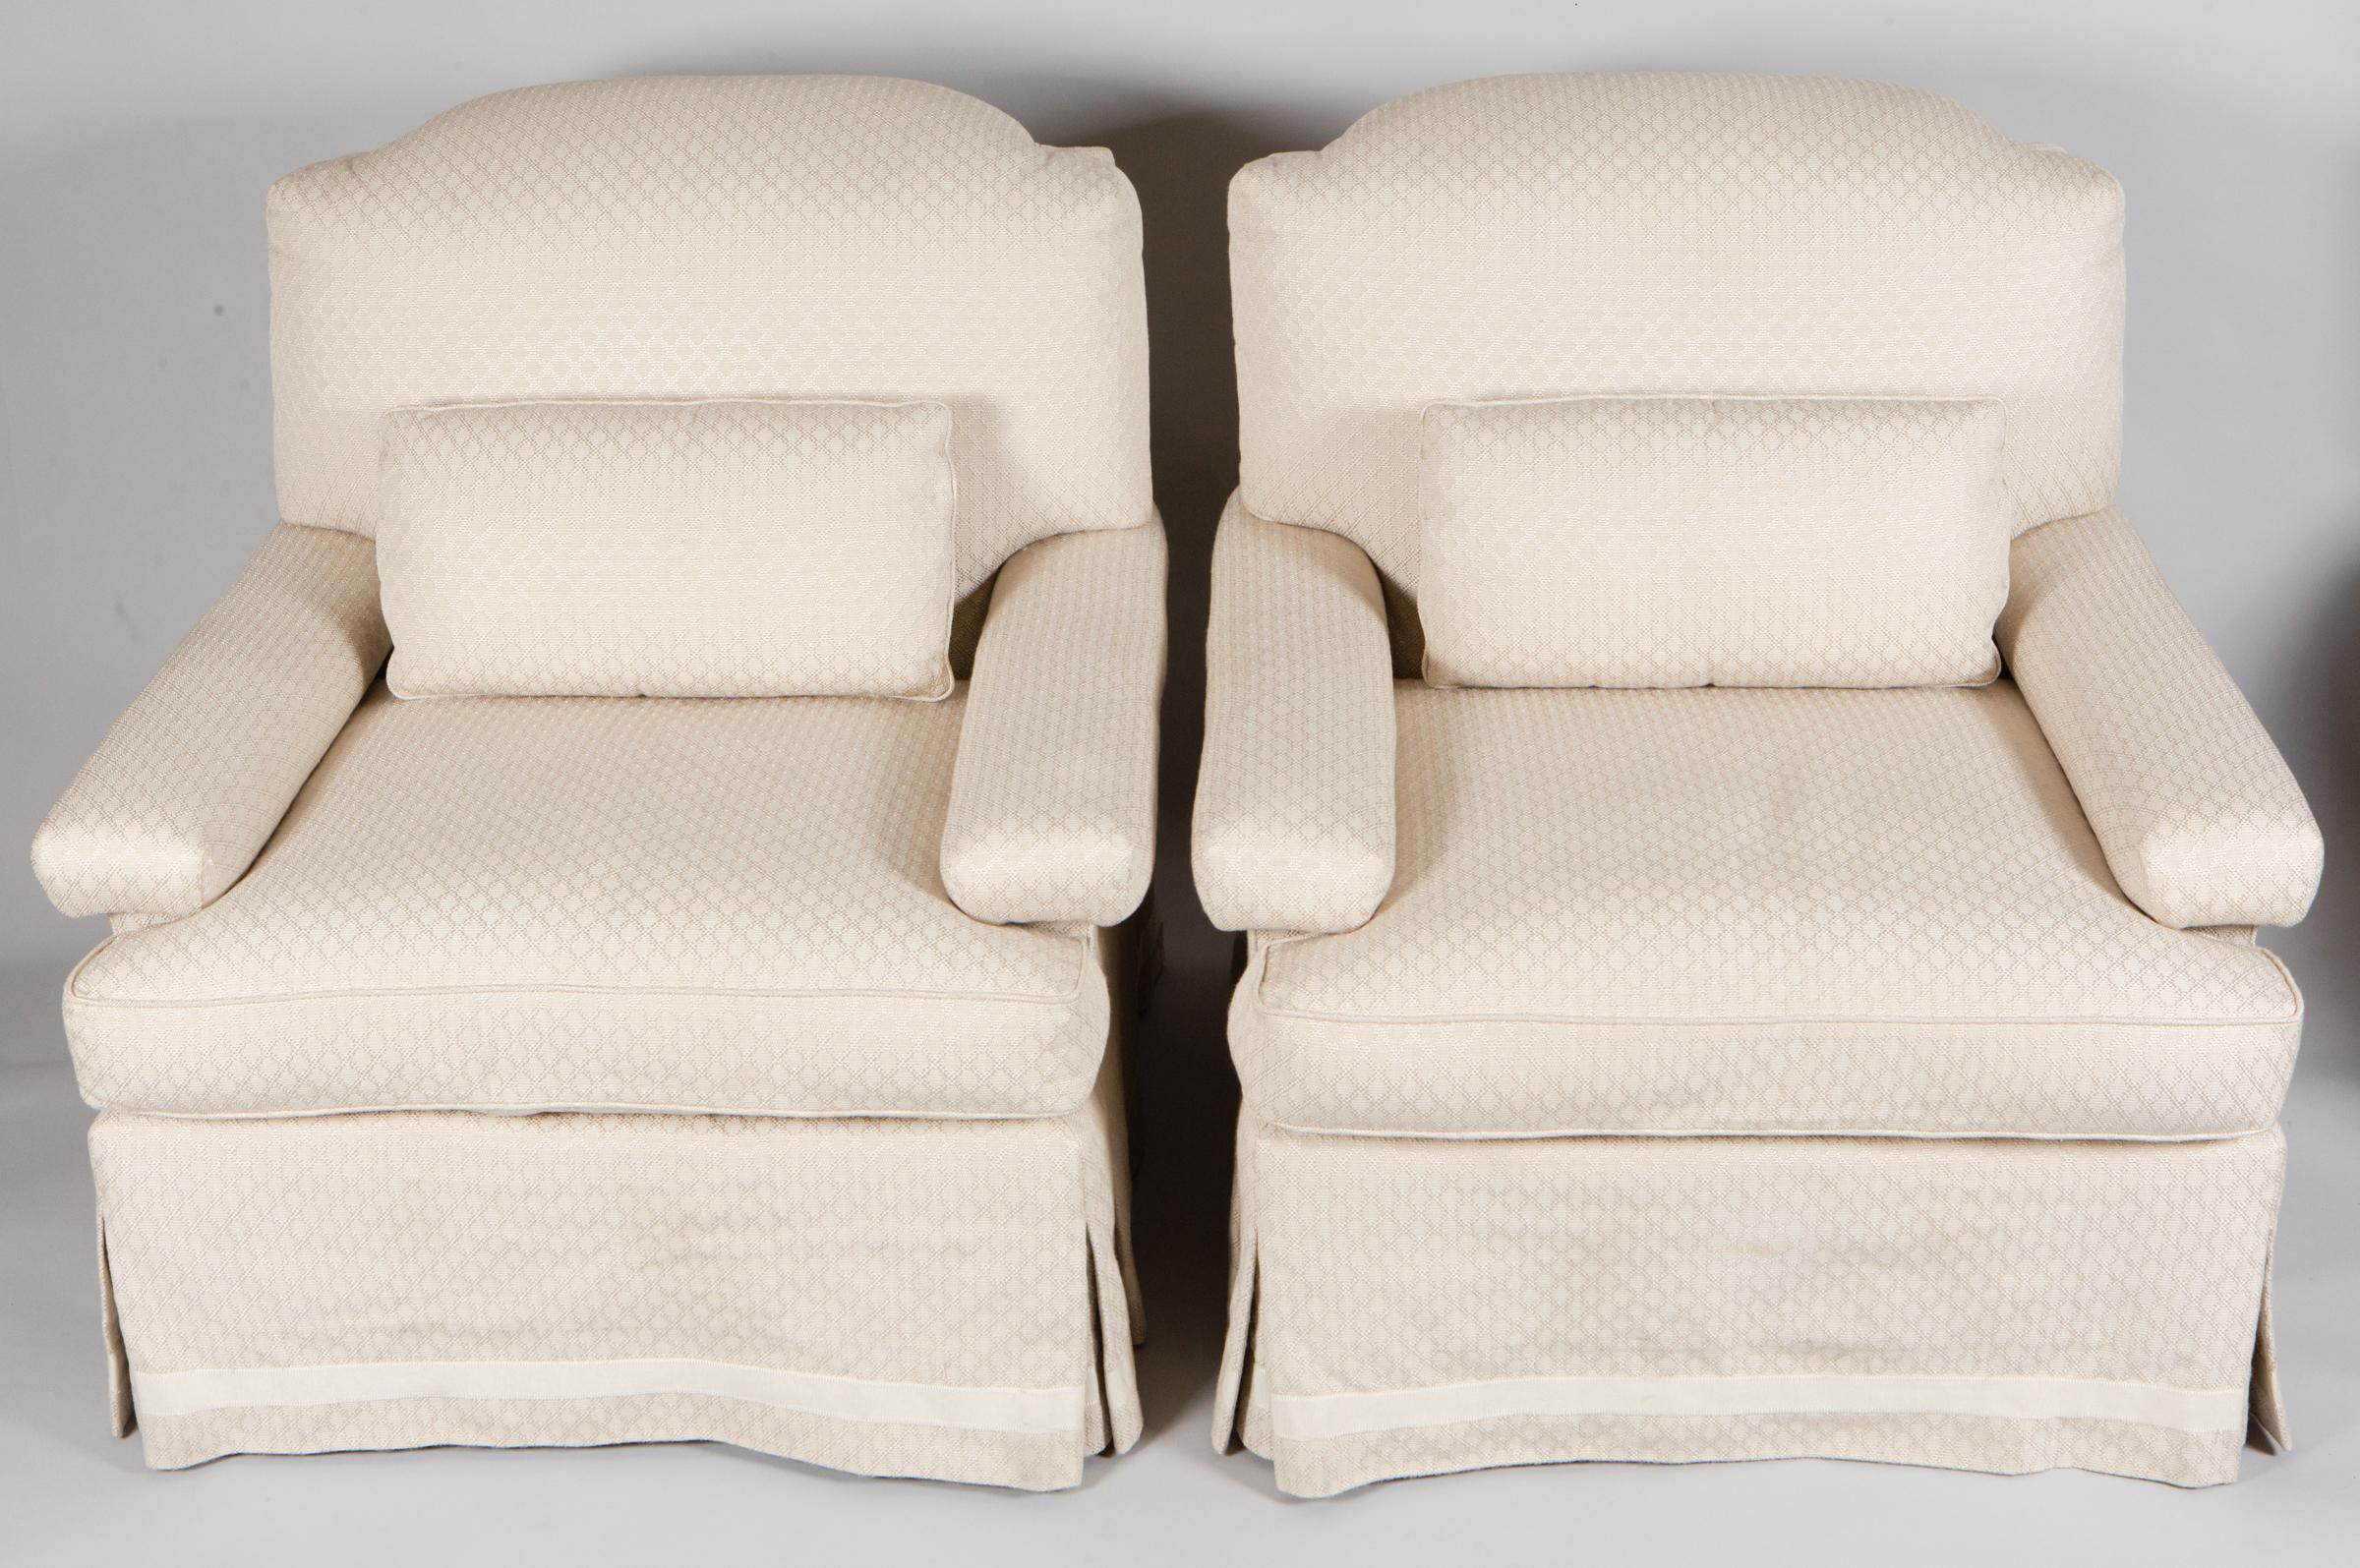 Paire de fauteuils club en lin blanc, le tissu en lin présente un motif géométrique subtil.